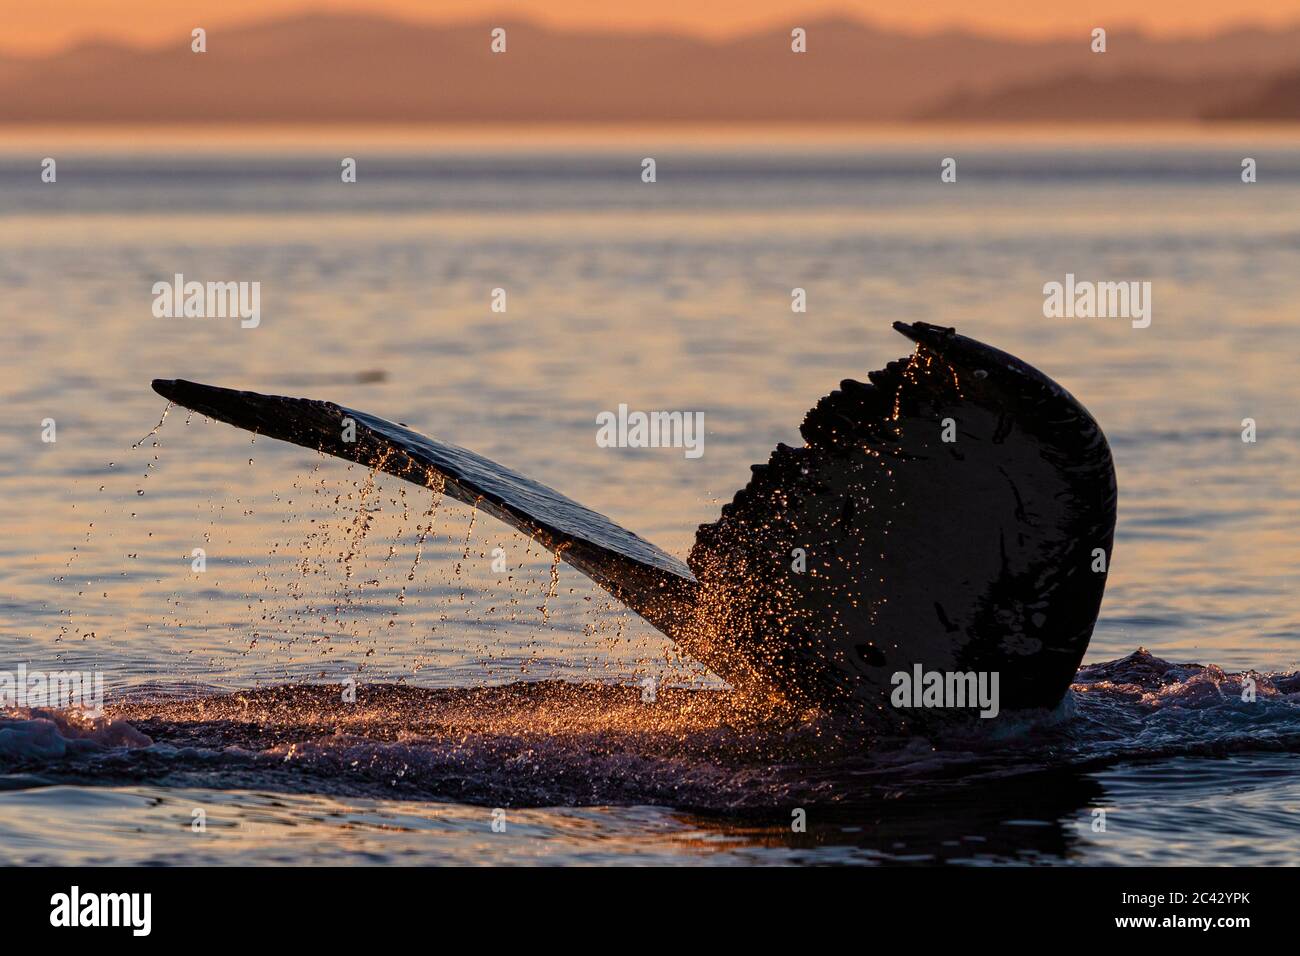 L'acqua sta sgocciando da una balena di ritorno, durante il tramonto nell'arcipelago di Broughton, territorio delle prime Nazioni, British Columbia, Canada Foto Stock